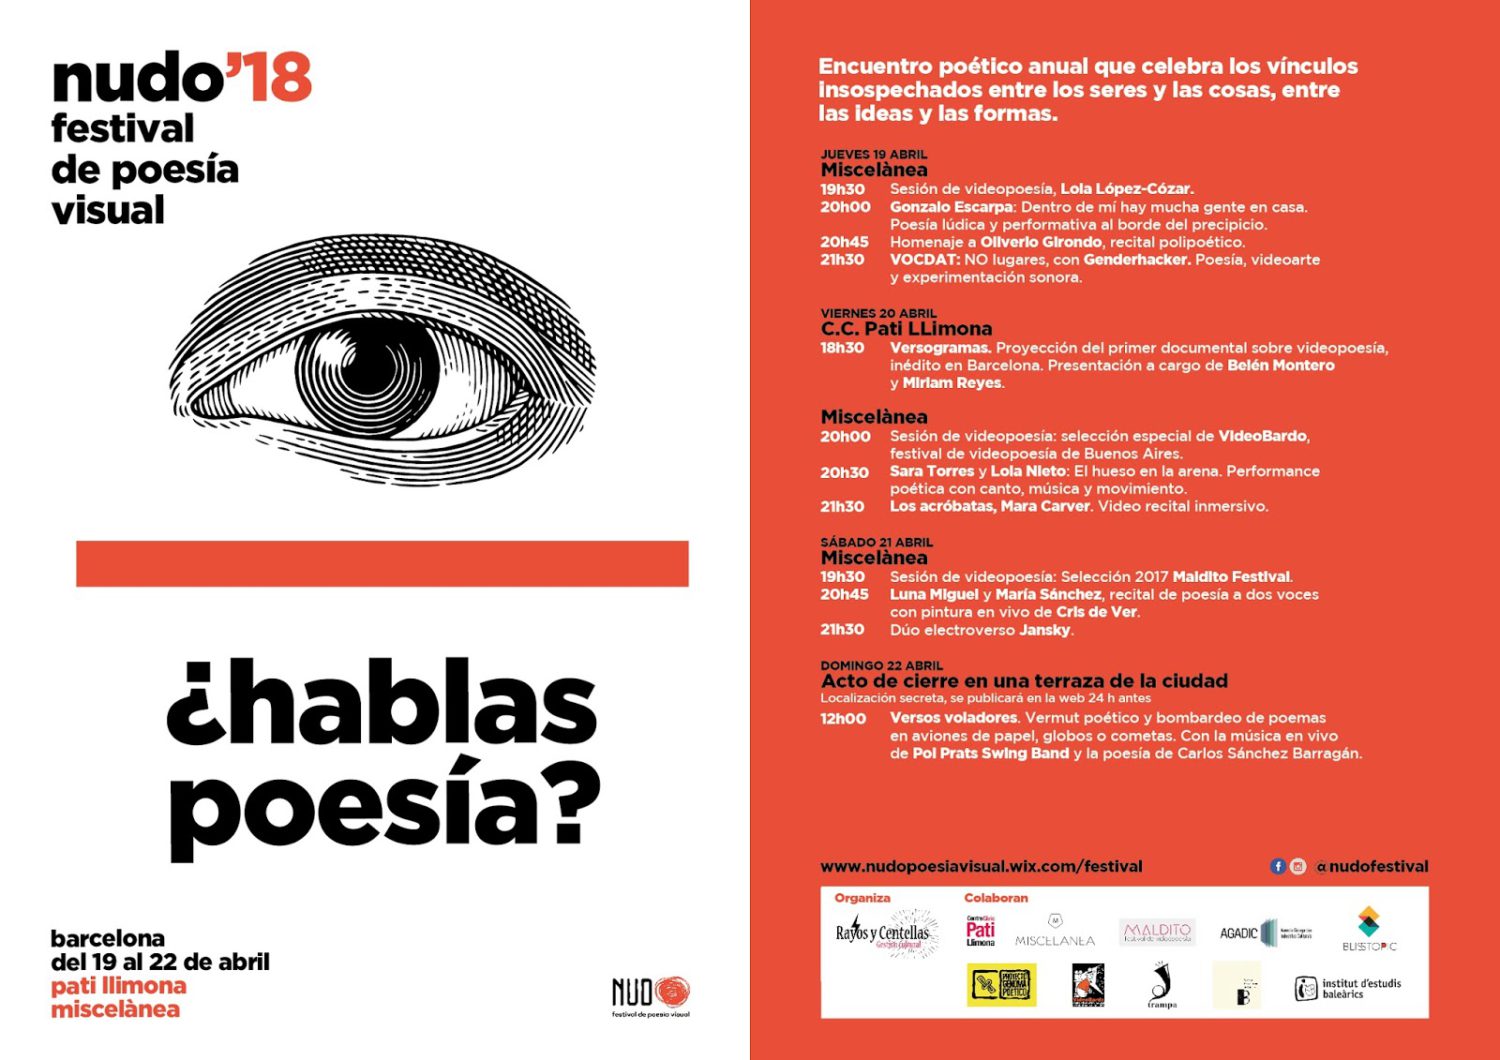 NUDO 2018, Feria de Poesía Visual Barcelona: CAOSCOPIA